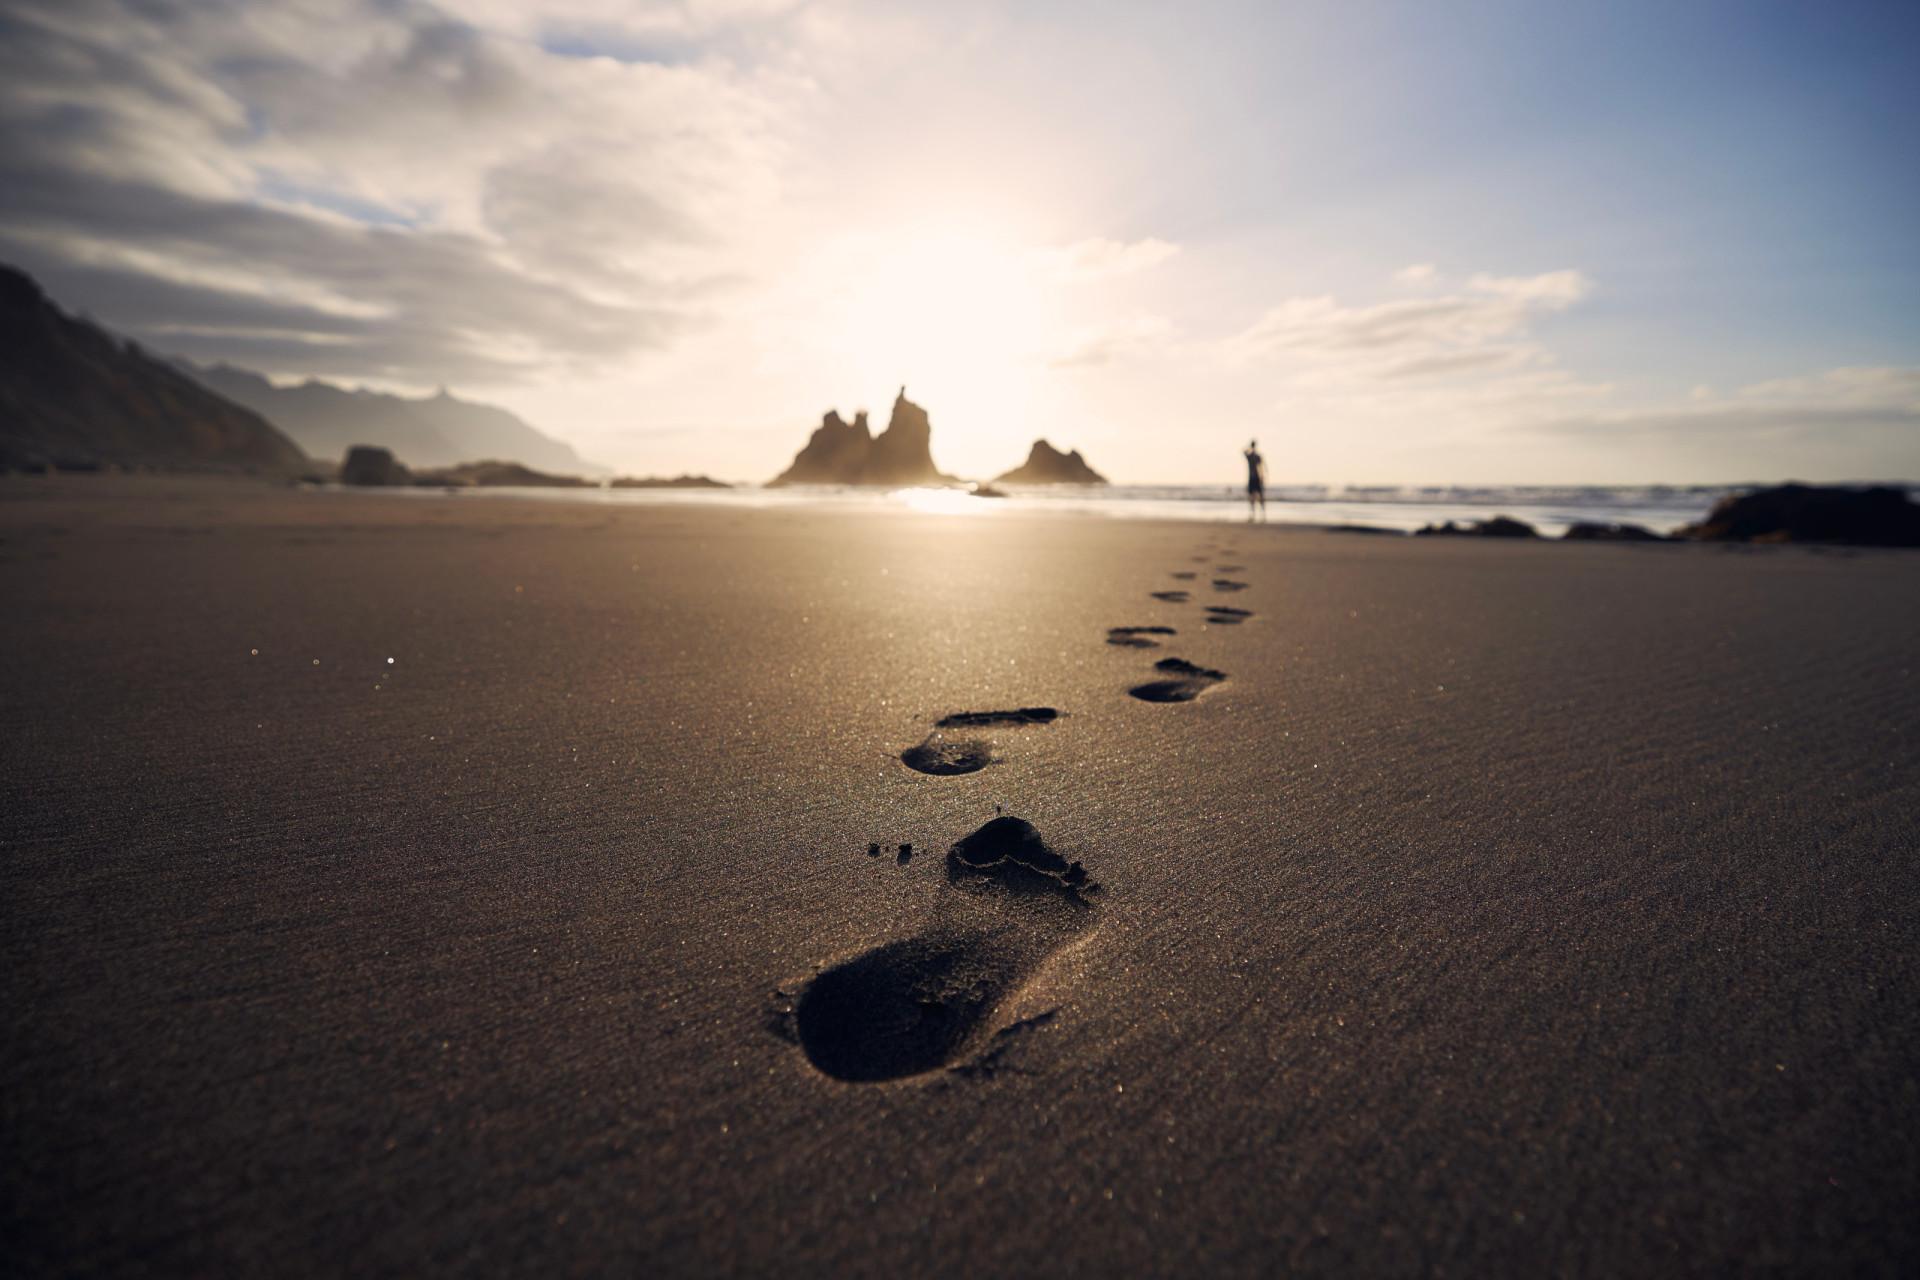 <p>Les recherches montrent que la marche sur la plage constitue un entraînement solide, car la marche sur le sable exige un effort plus important que la marche sur une surface dure comme le béton.</p>